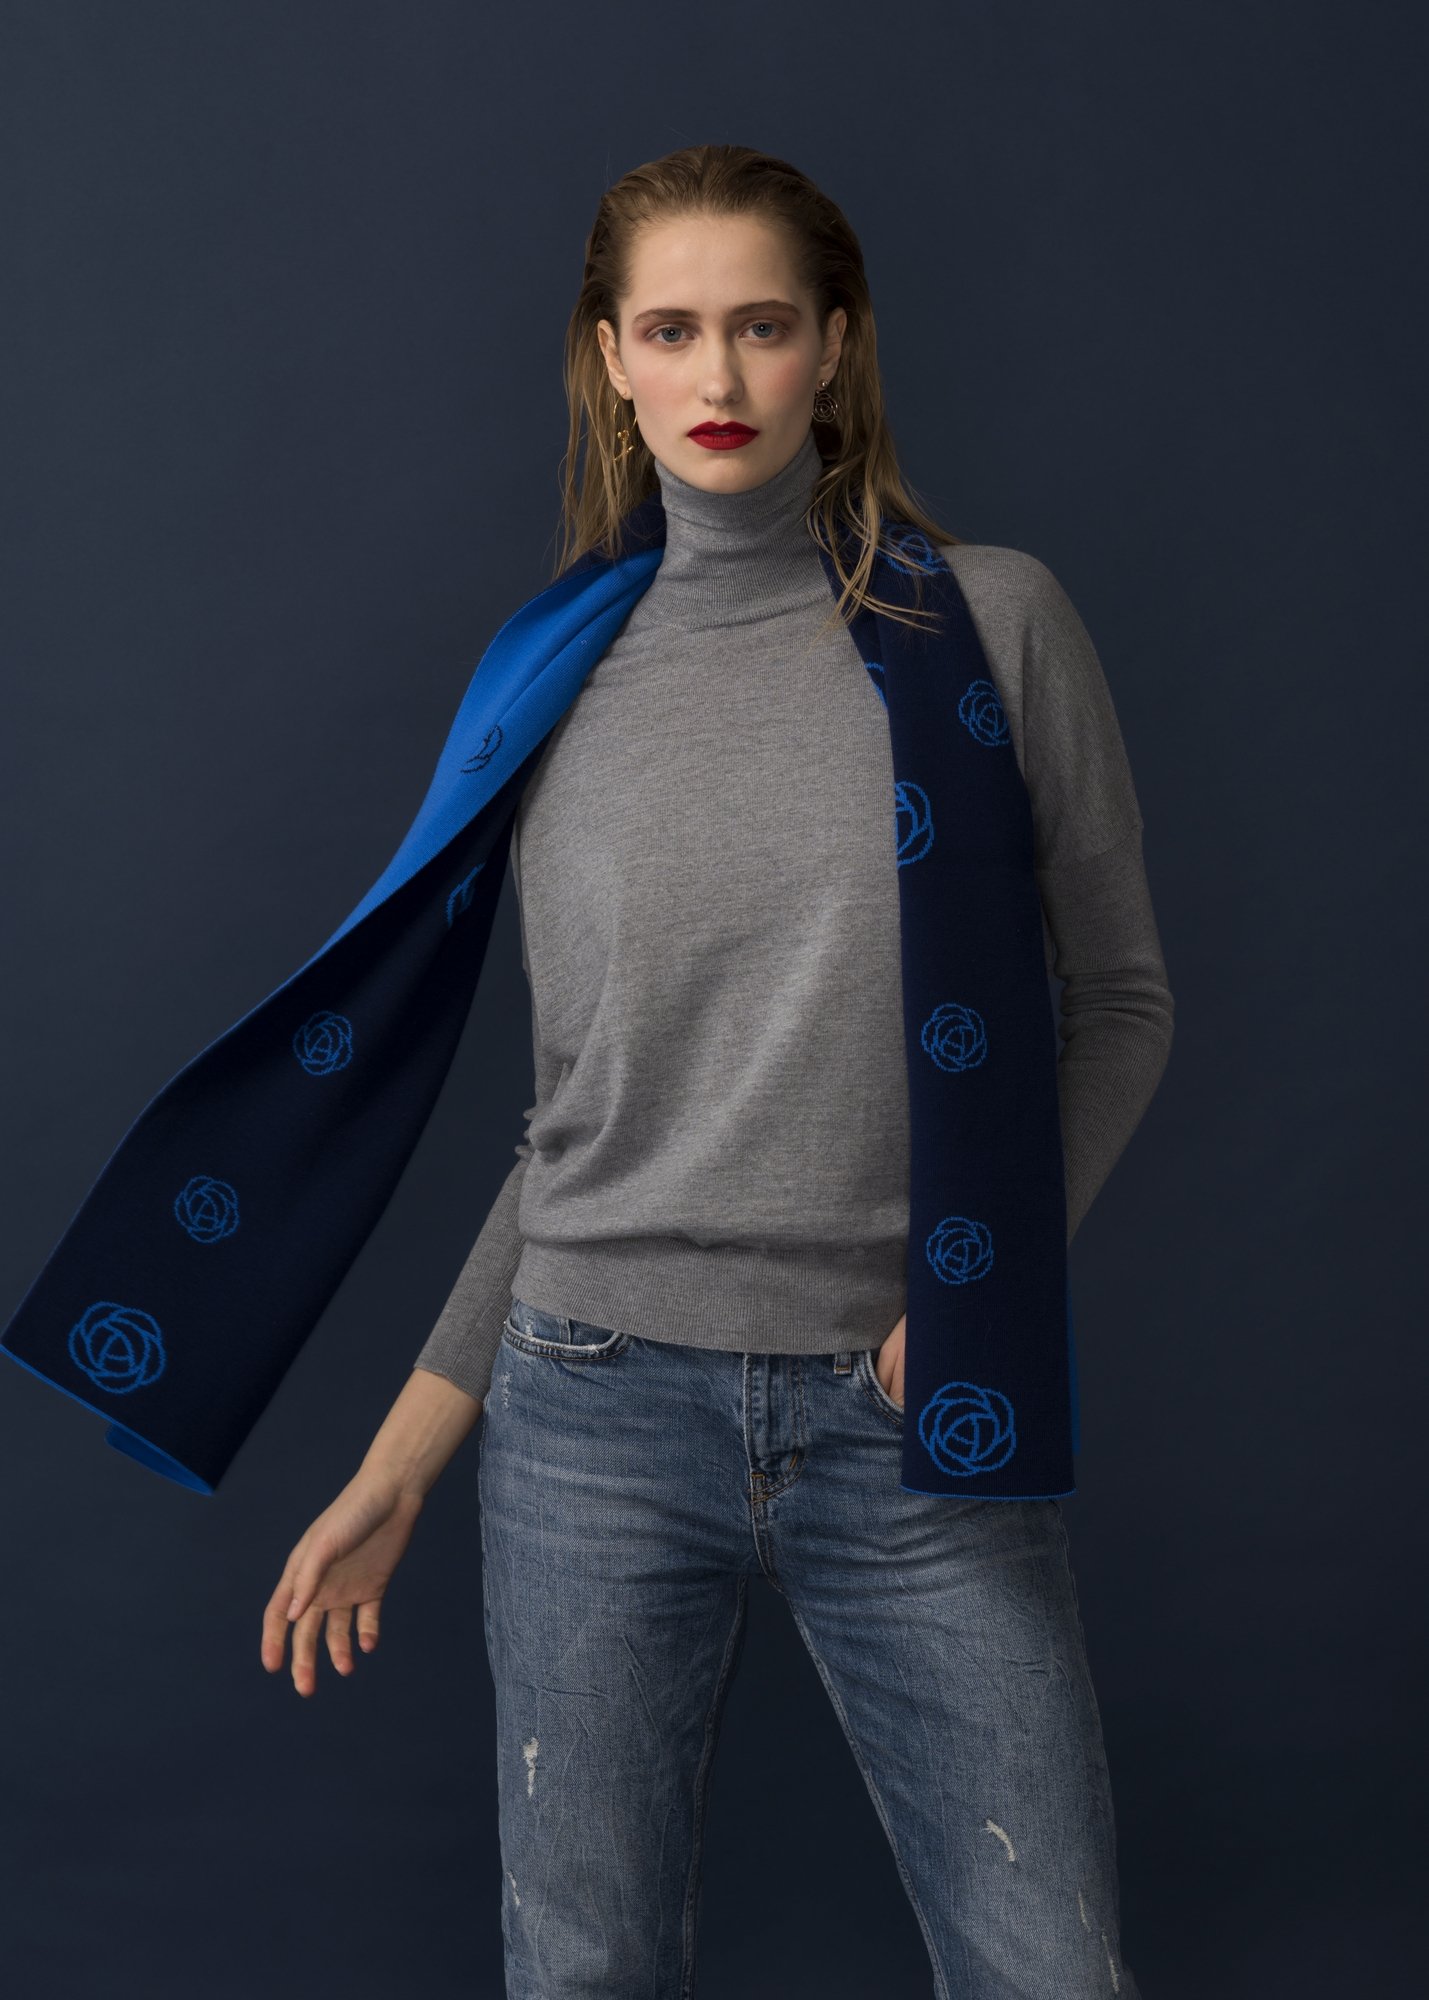 Foulard with peony print, Blue - AmiAmalia Luxury Knitwear